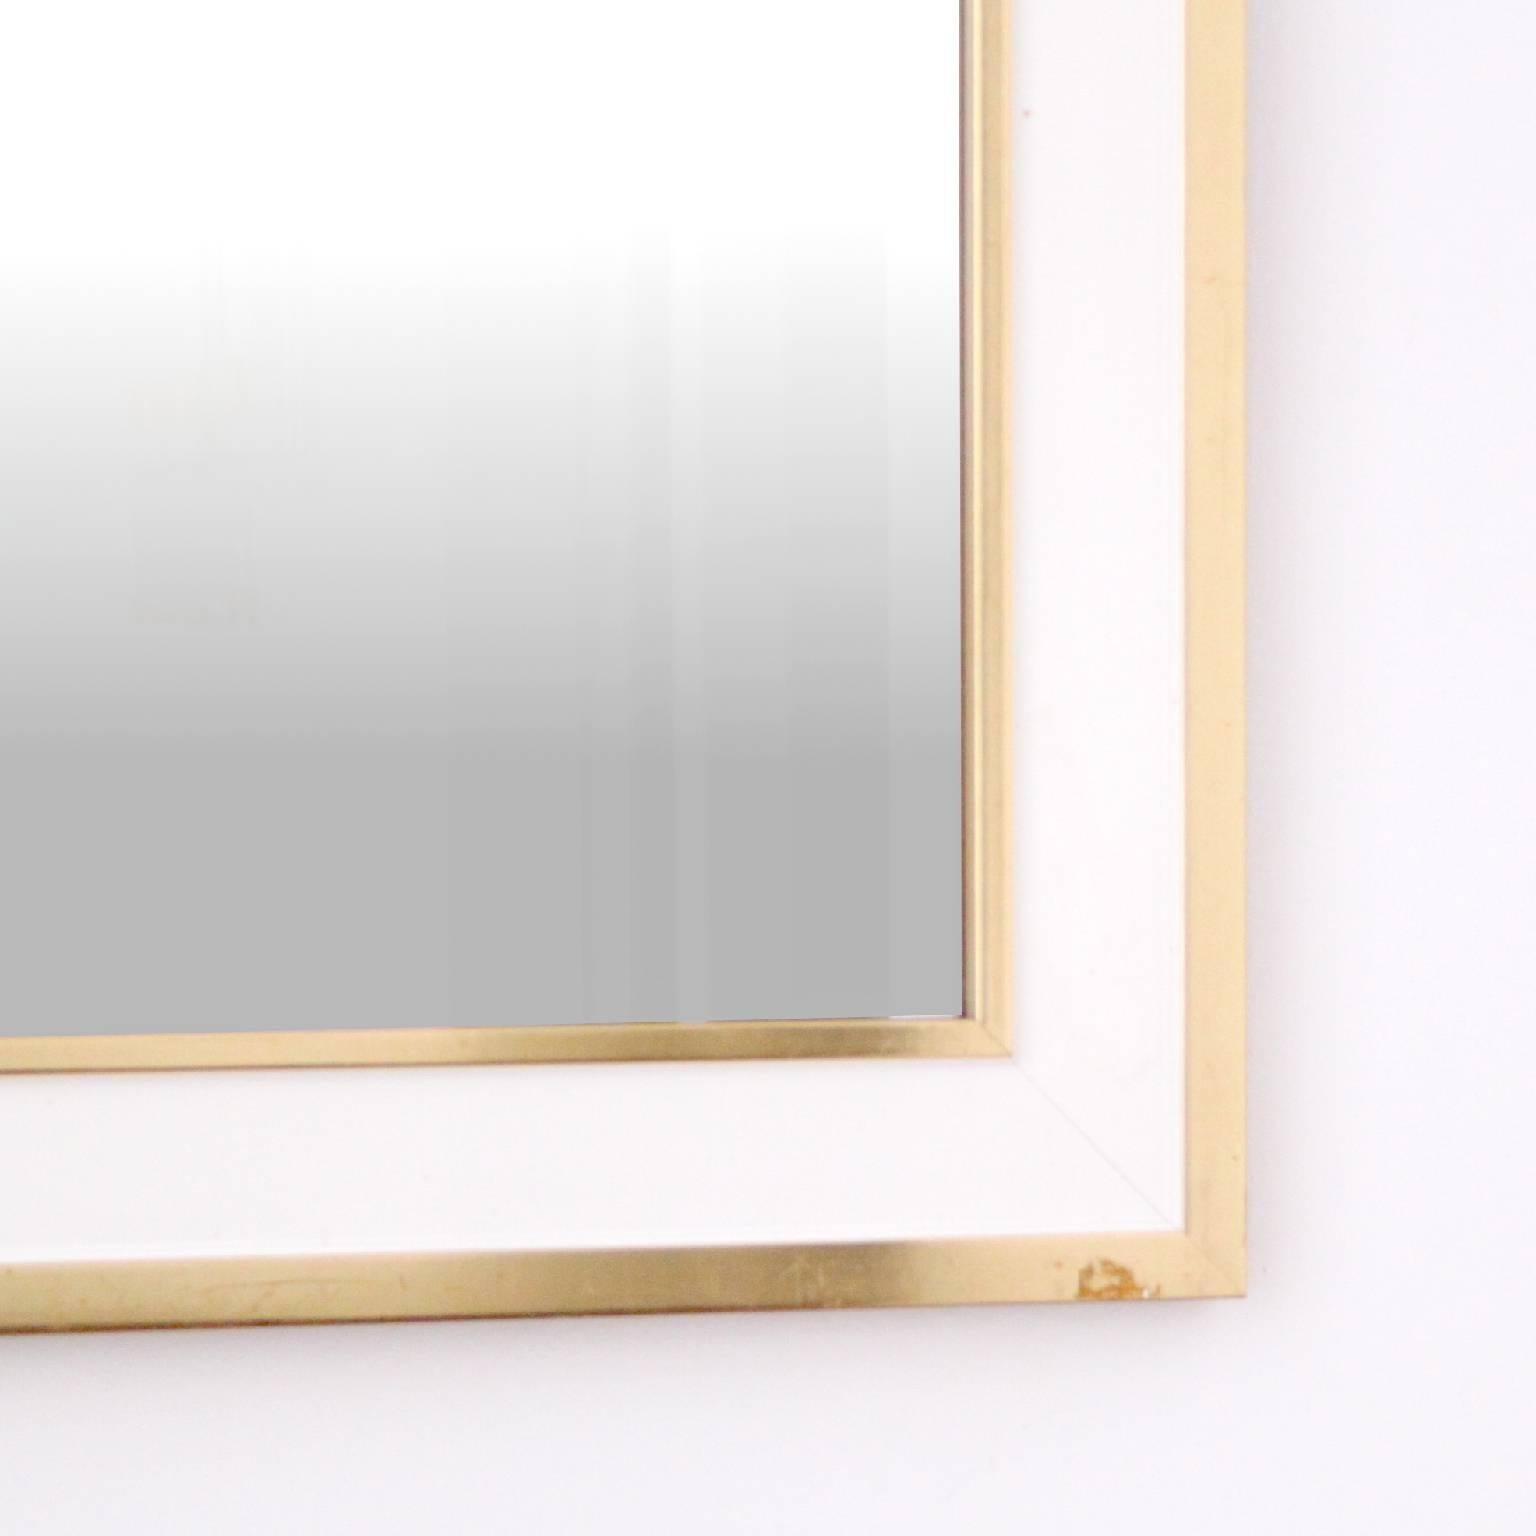 Gilded mirror designed by Estrid Ericson.
Designed for Svenskt Tenn, circa 1950.
Size: 68 cm x 68 cm.

Swedish designer and entrepreneur Estrid Ericson was born in 1894. In 1924 she founded Svenskt Tenn in Stockholm. Estrid Ericson wanted to offer